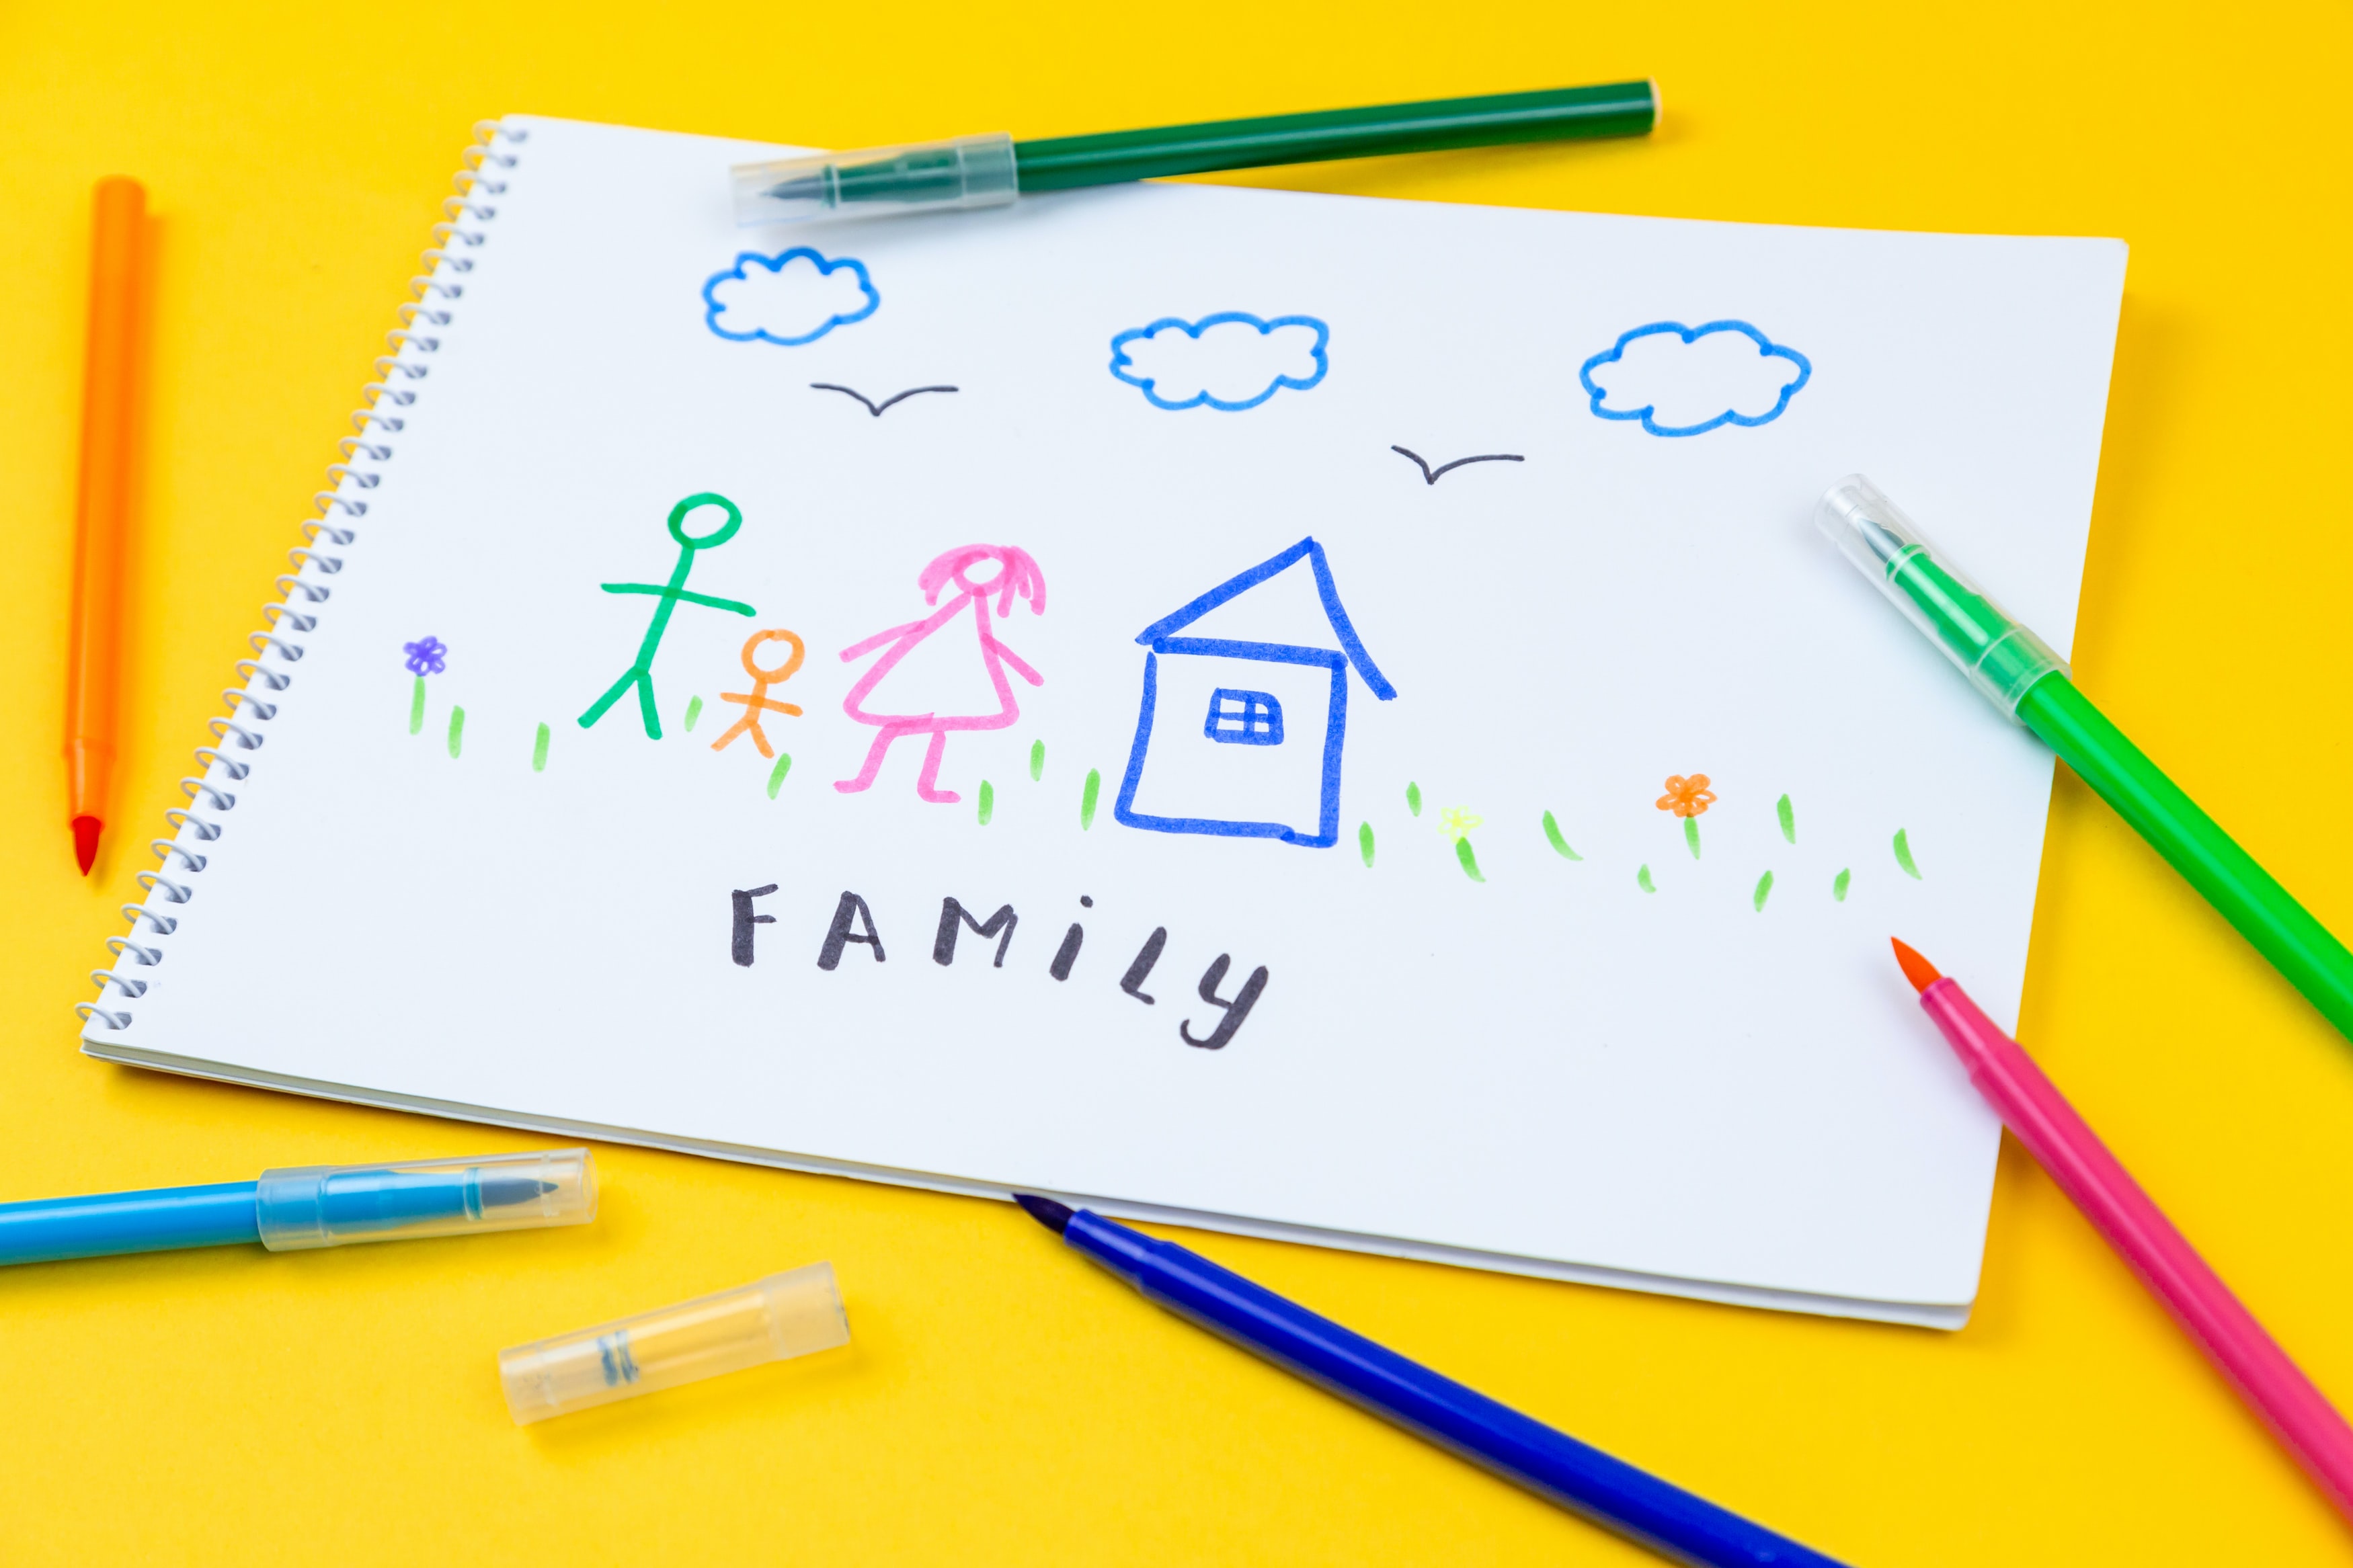 blog de notas con colorines, dibujos infantiles y palabra Family